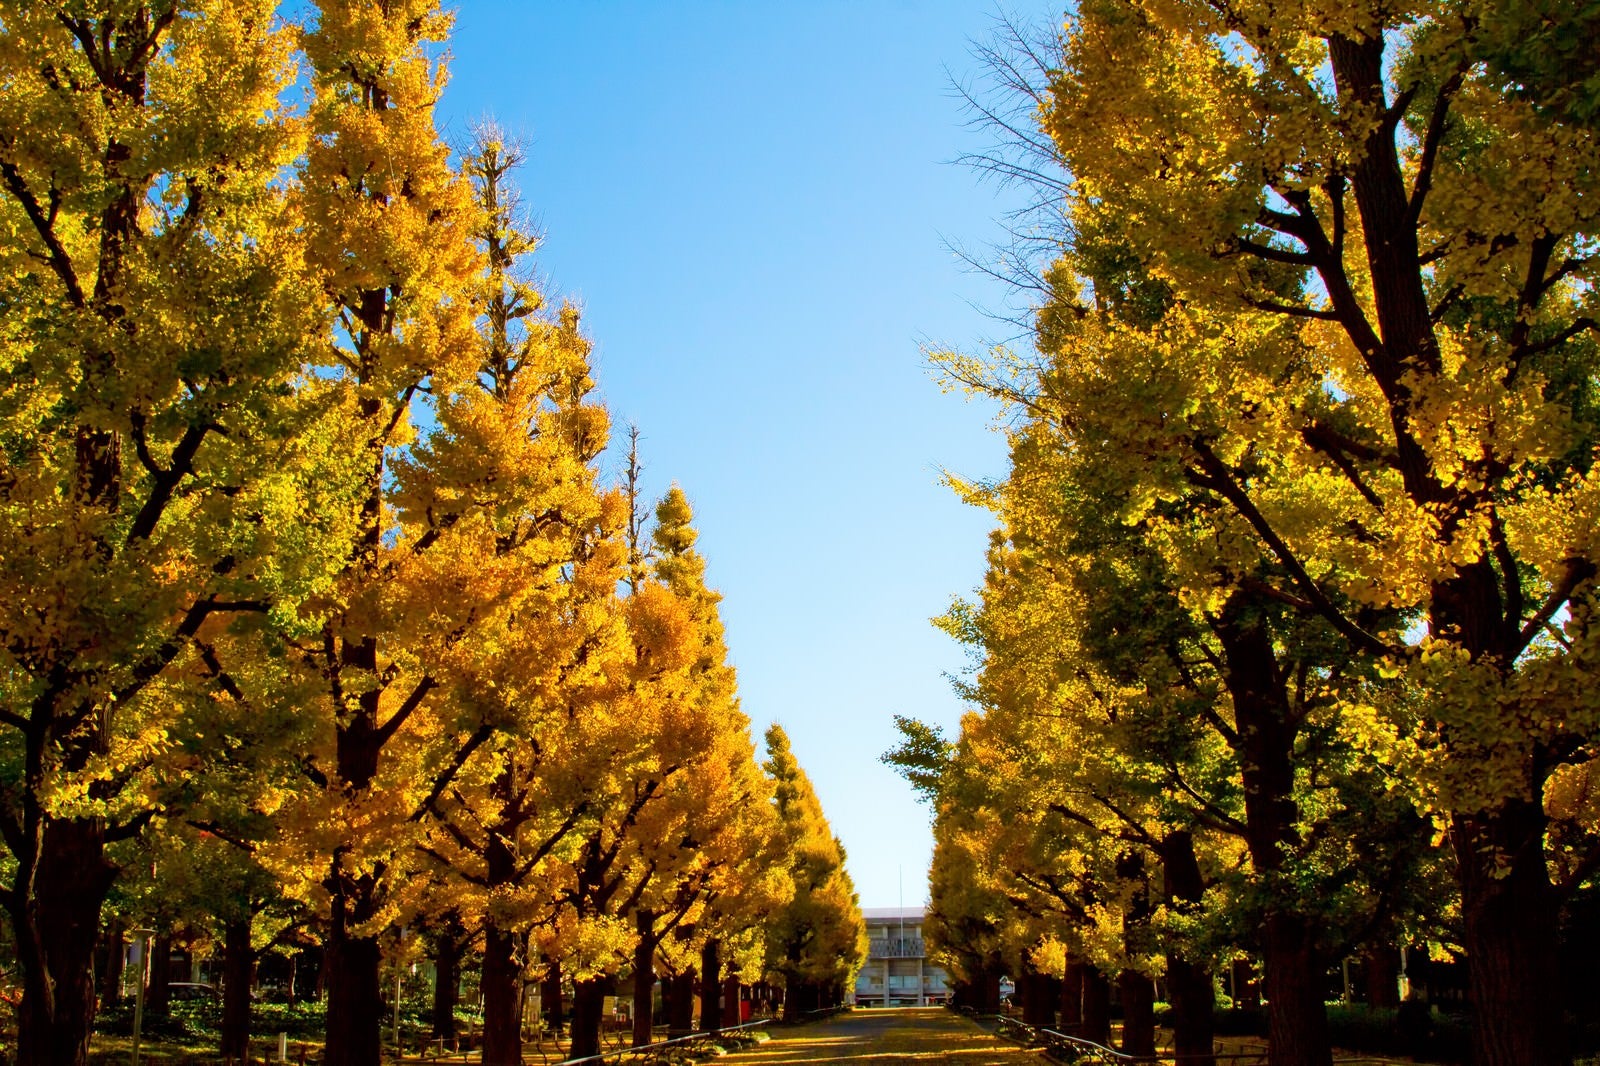 「慶応大学の黄葉した銀杏並木」の写真